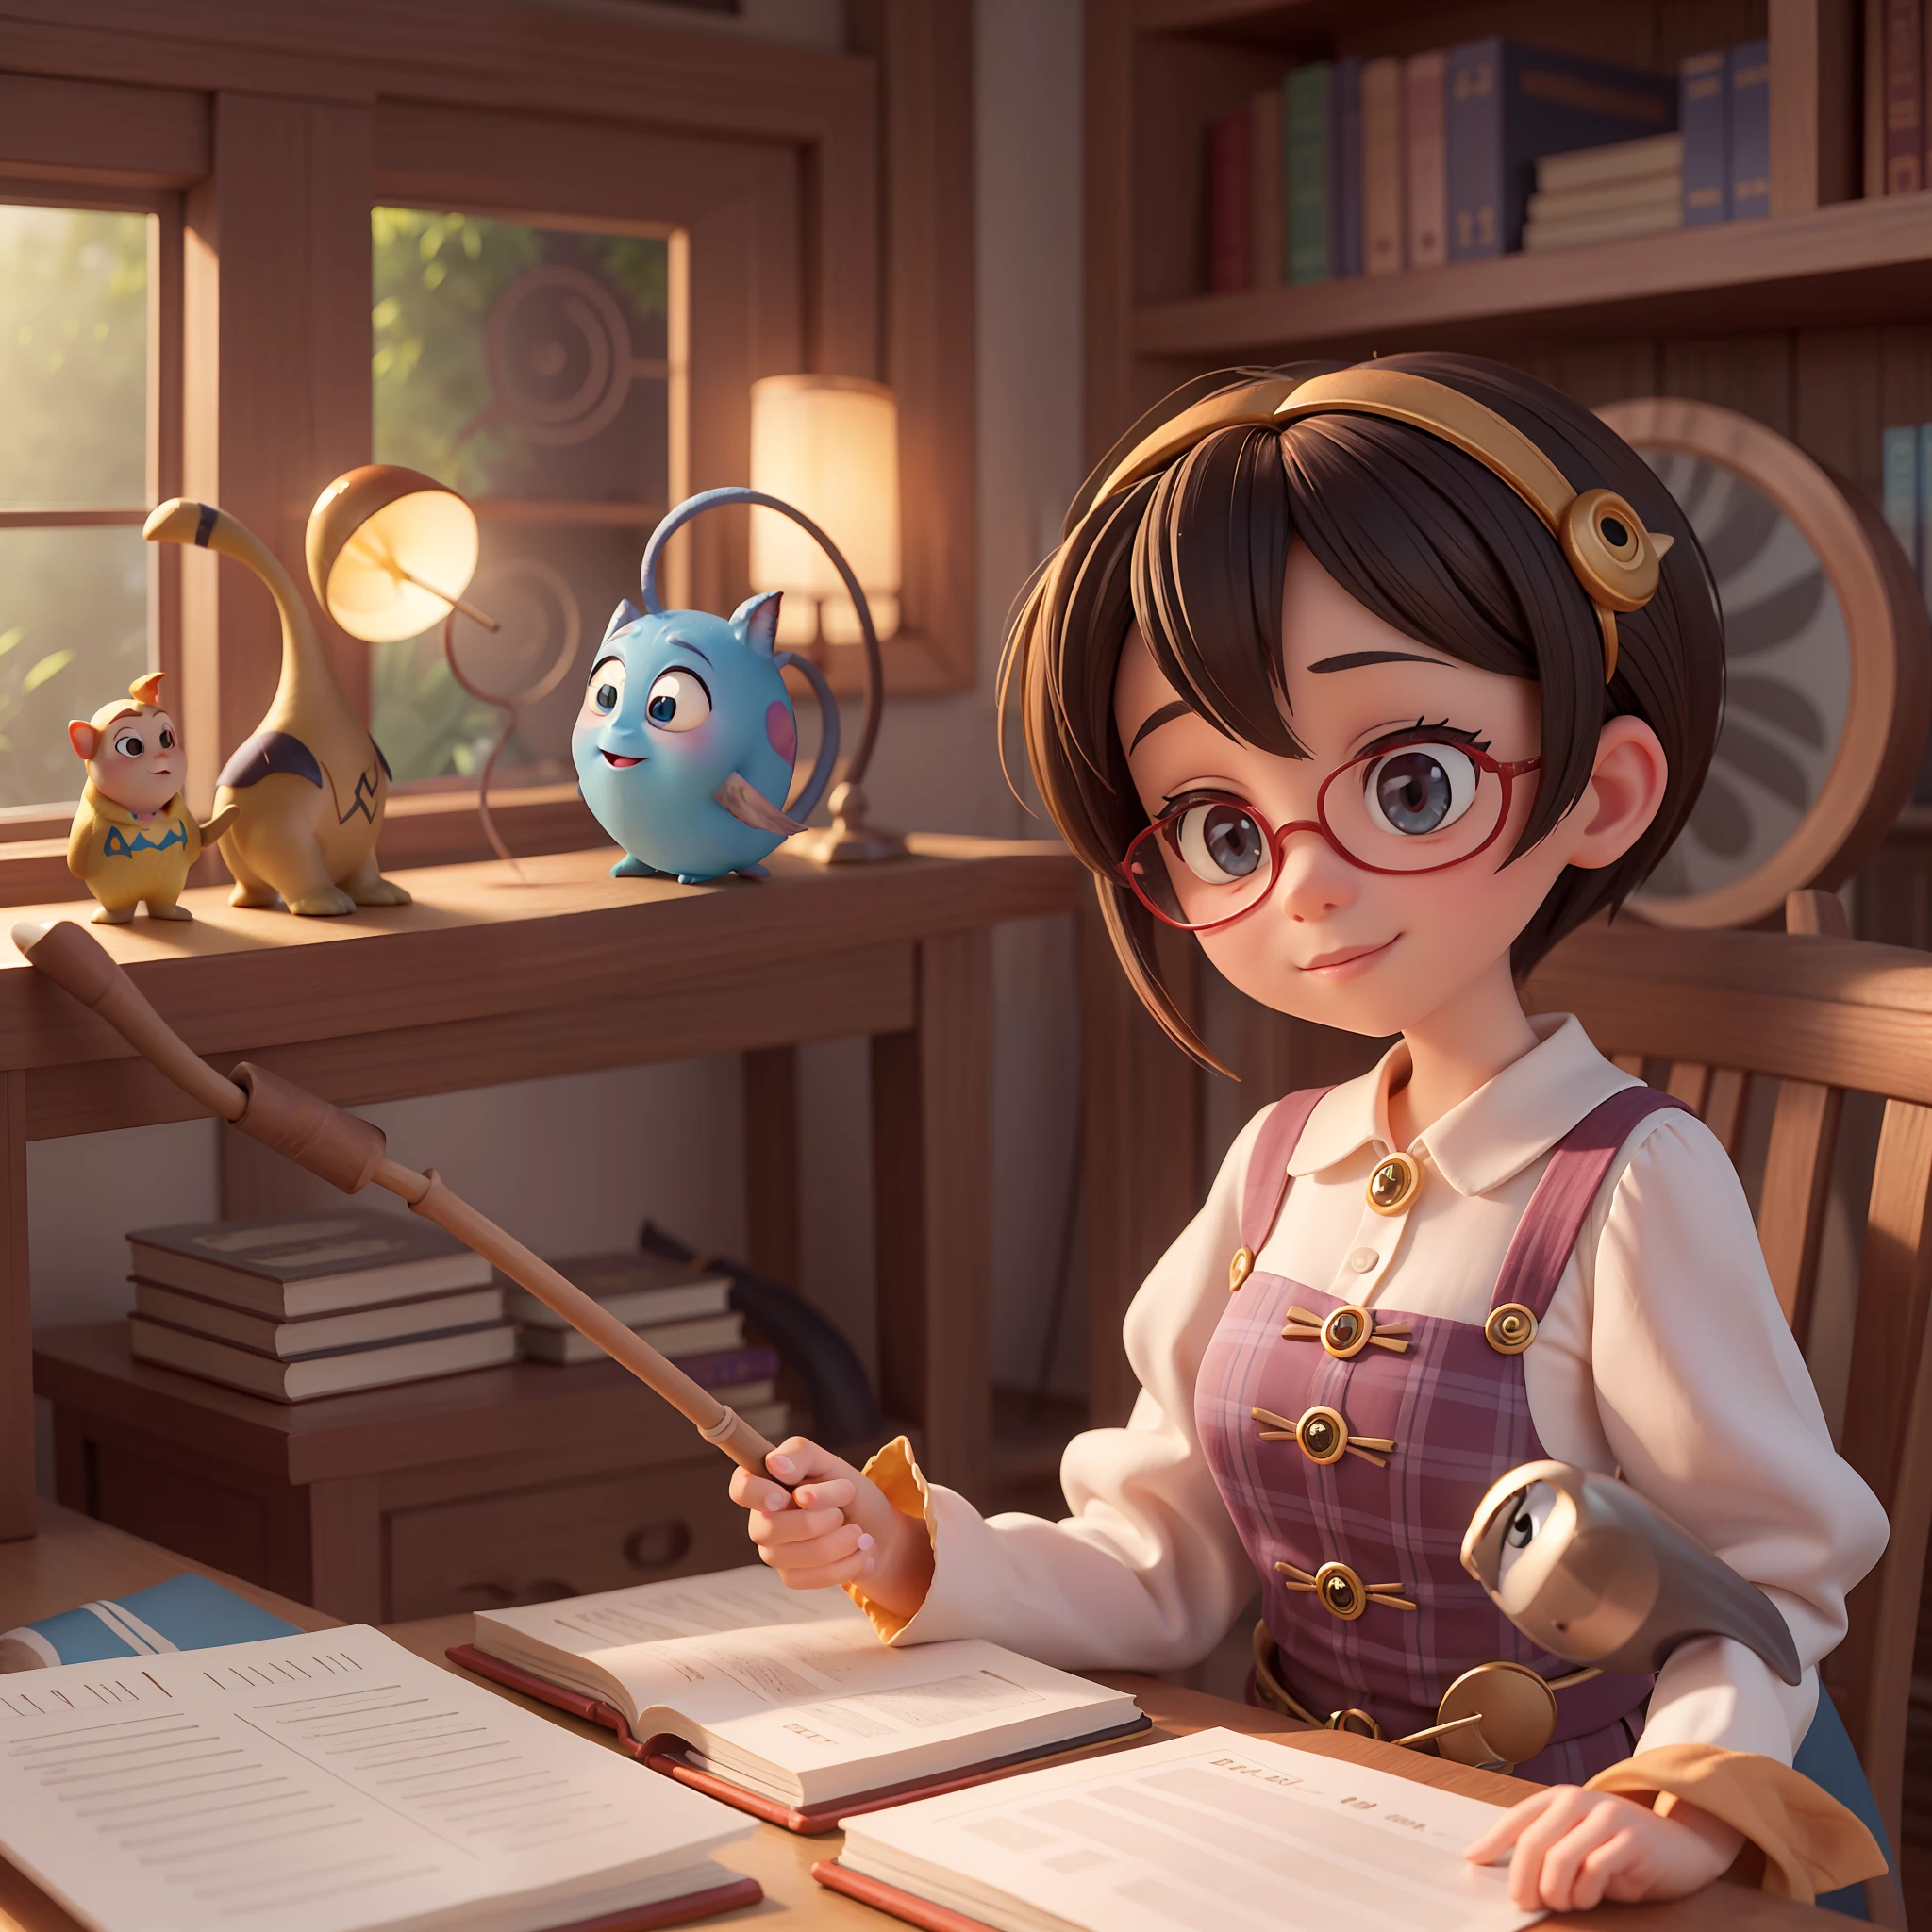 Uma bruxa fofa da Pixar em uma biblioteca da Pixar, pixar, luz solar, fundo de cor quente